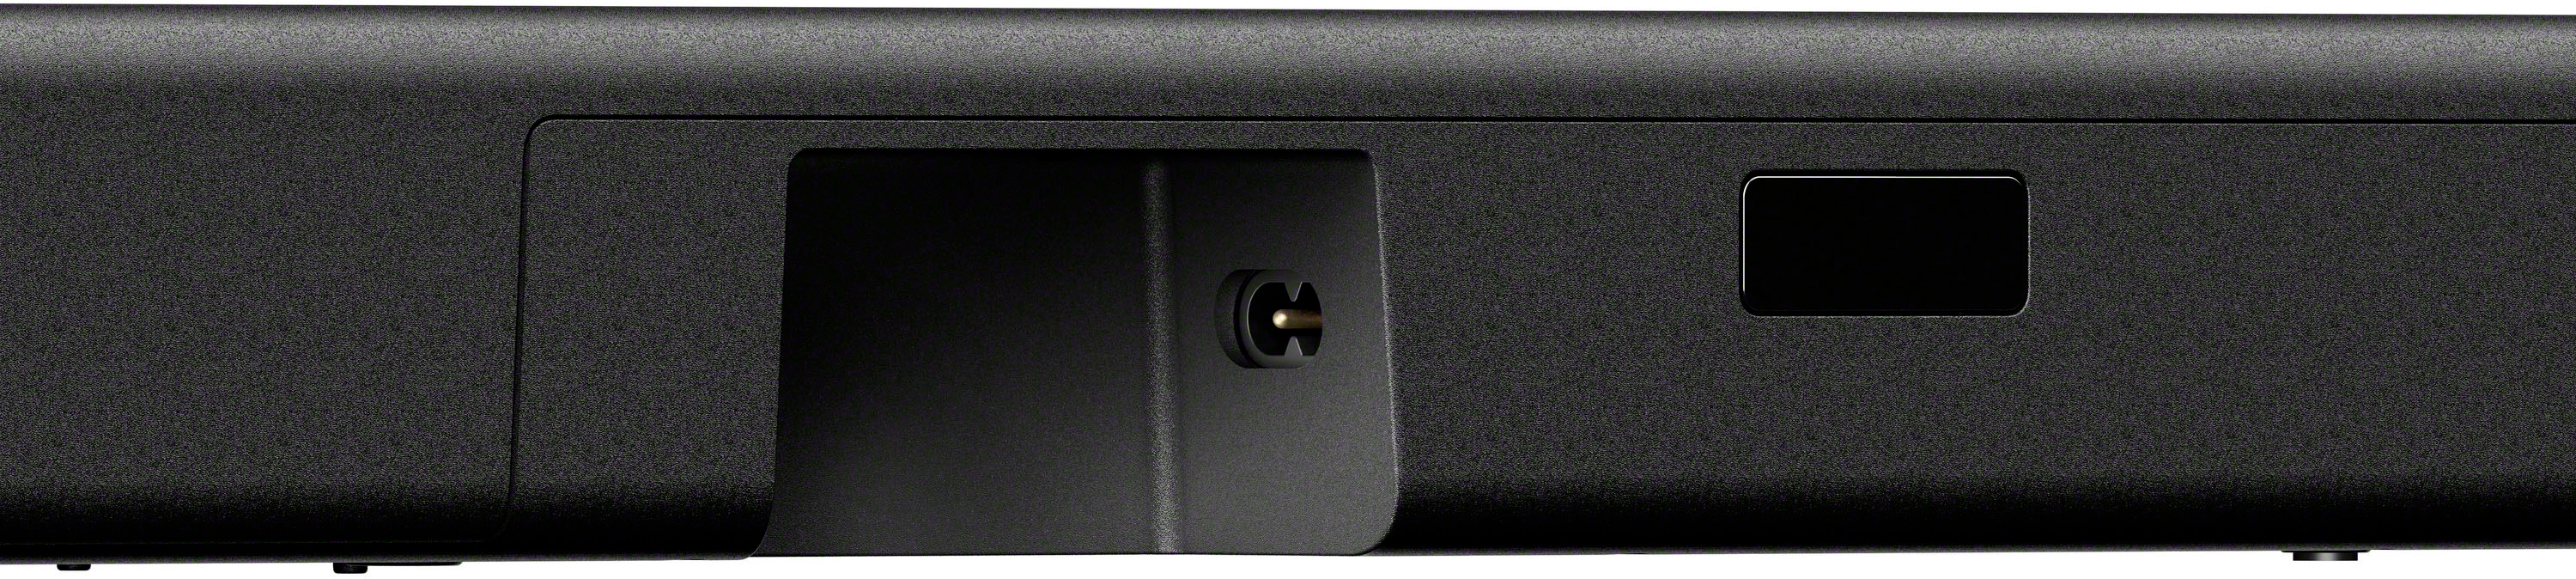  Sony HT-A5000 - Barra de sonido Dolby Atmos de 5.1.2 canales,  sonido envolvente, cine en casa con DTS:X y 360 Spatial Sound Mapping,  funciona con Alexa y Google Assistant, color negro 